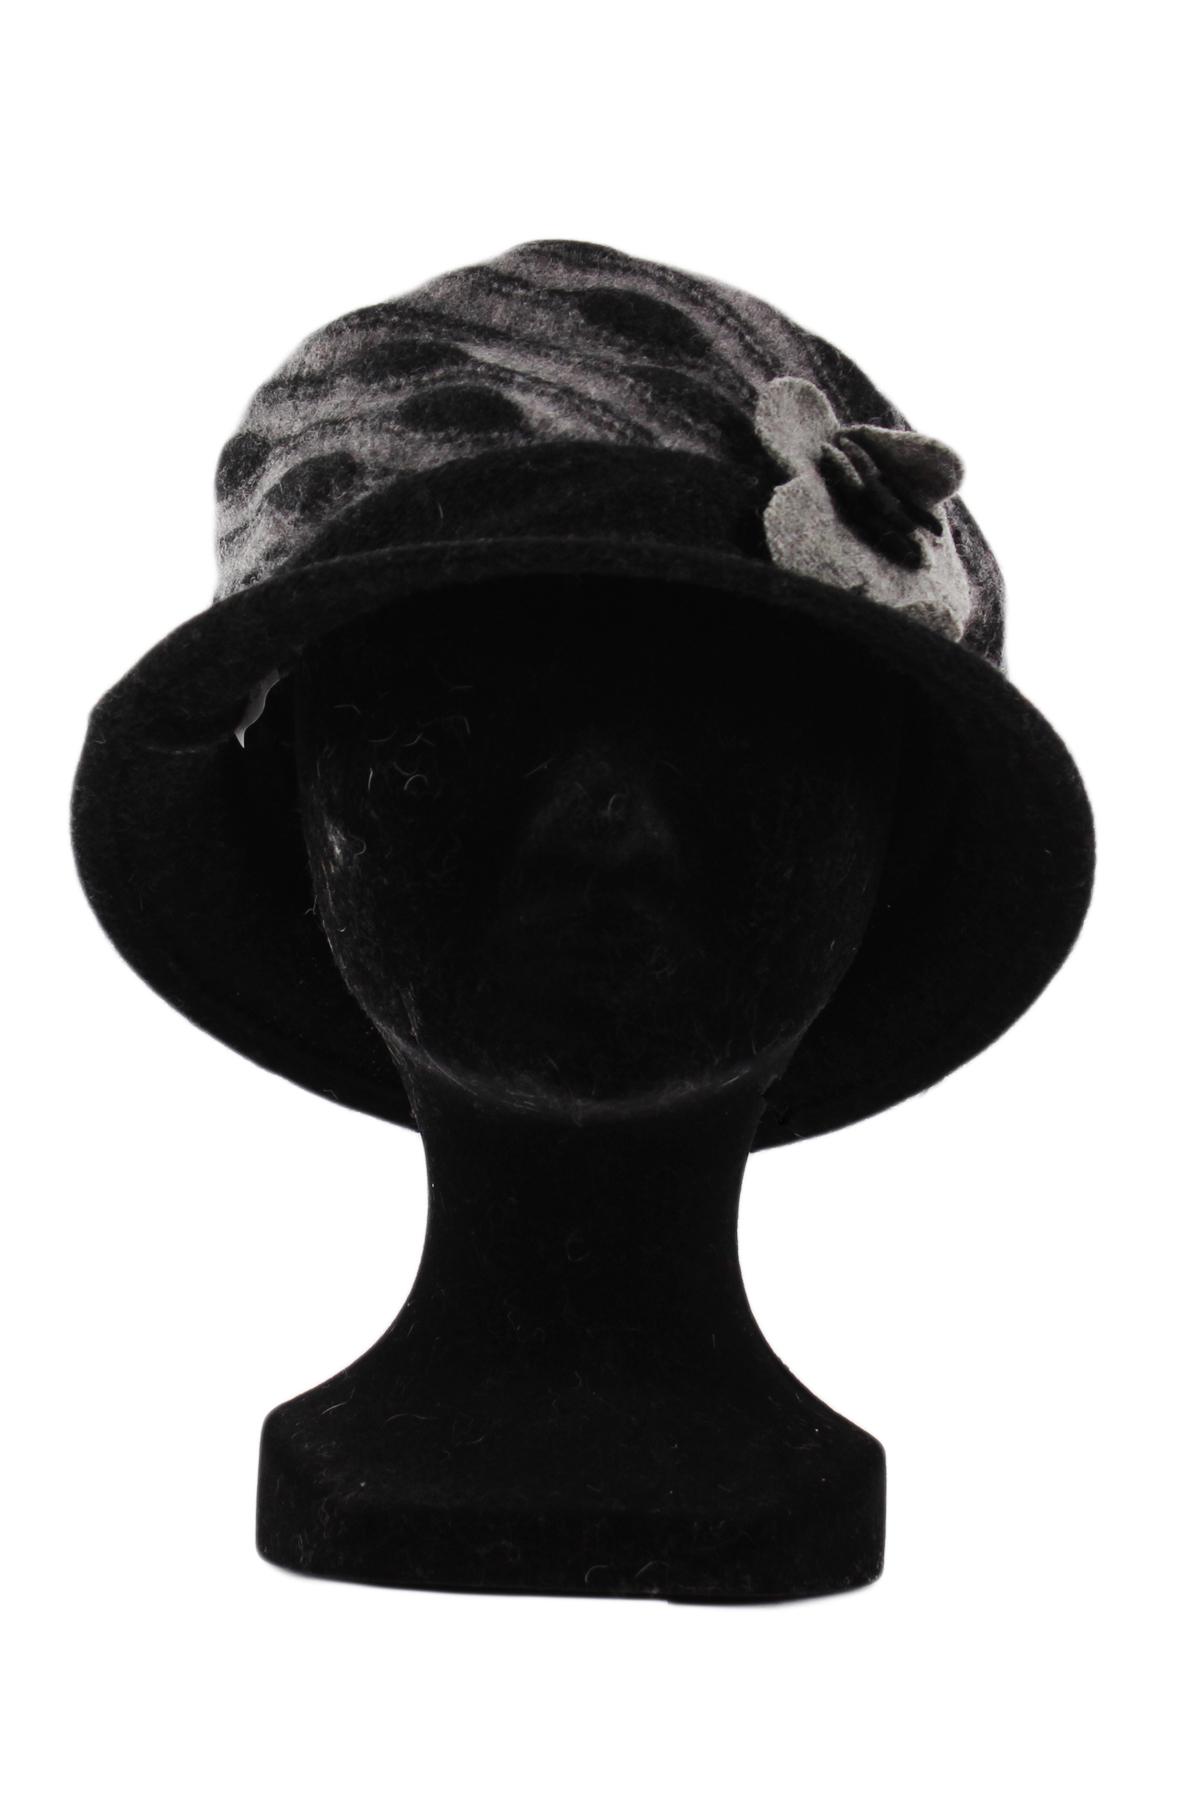 Hats Accessories Black Lil Moon HLX-AD05 #c Efashion Paris